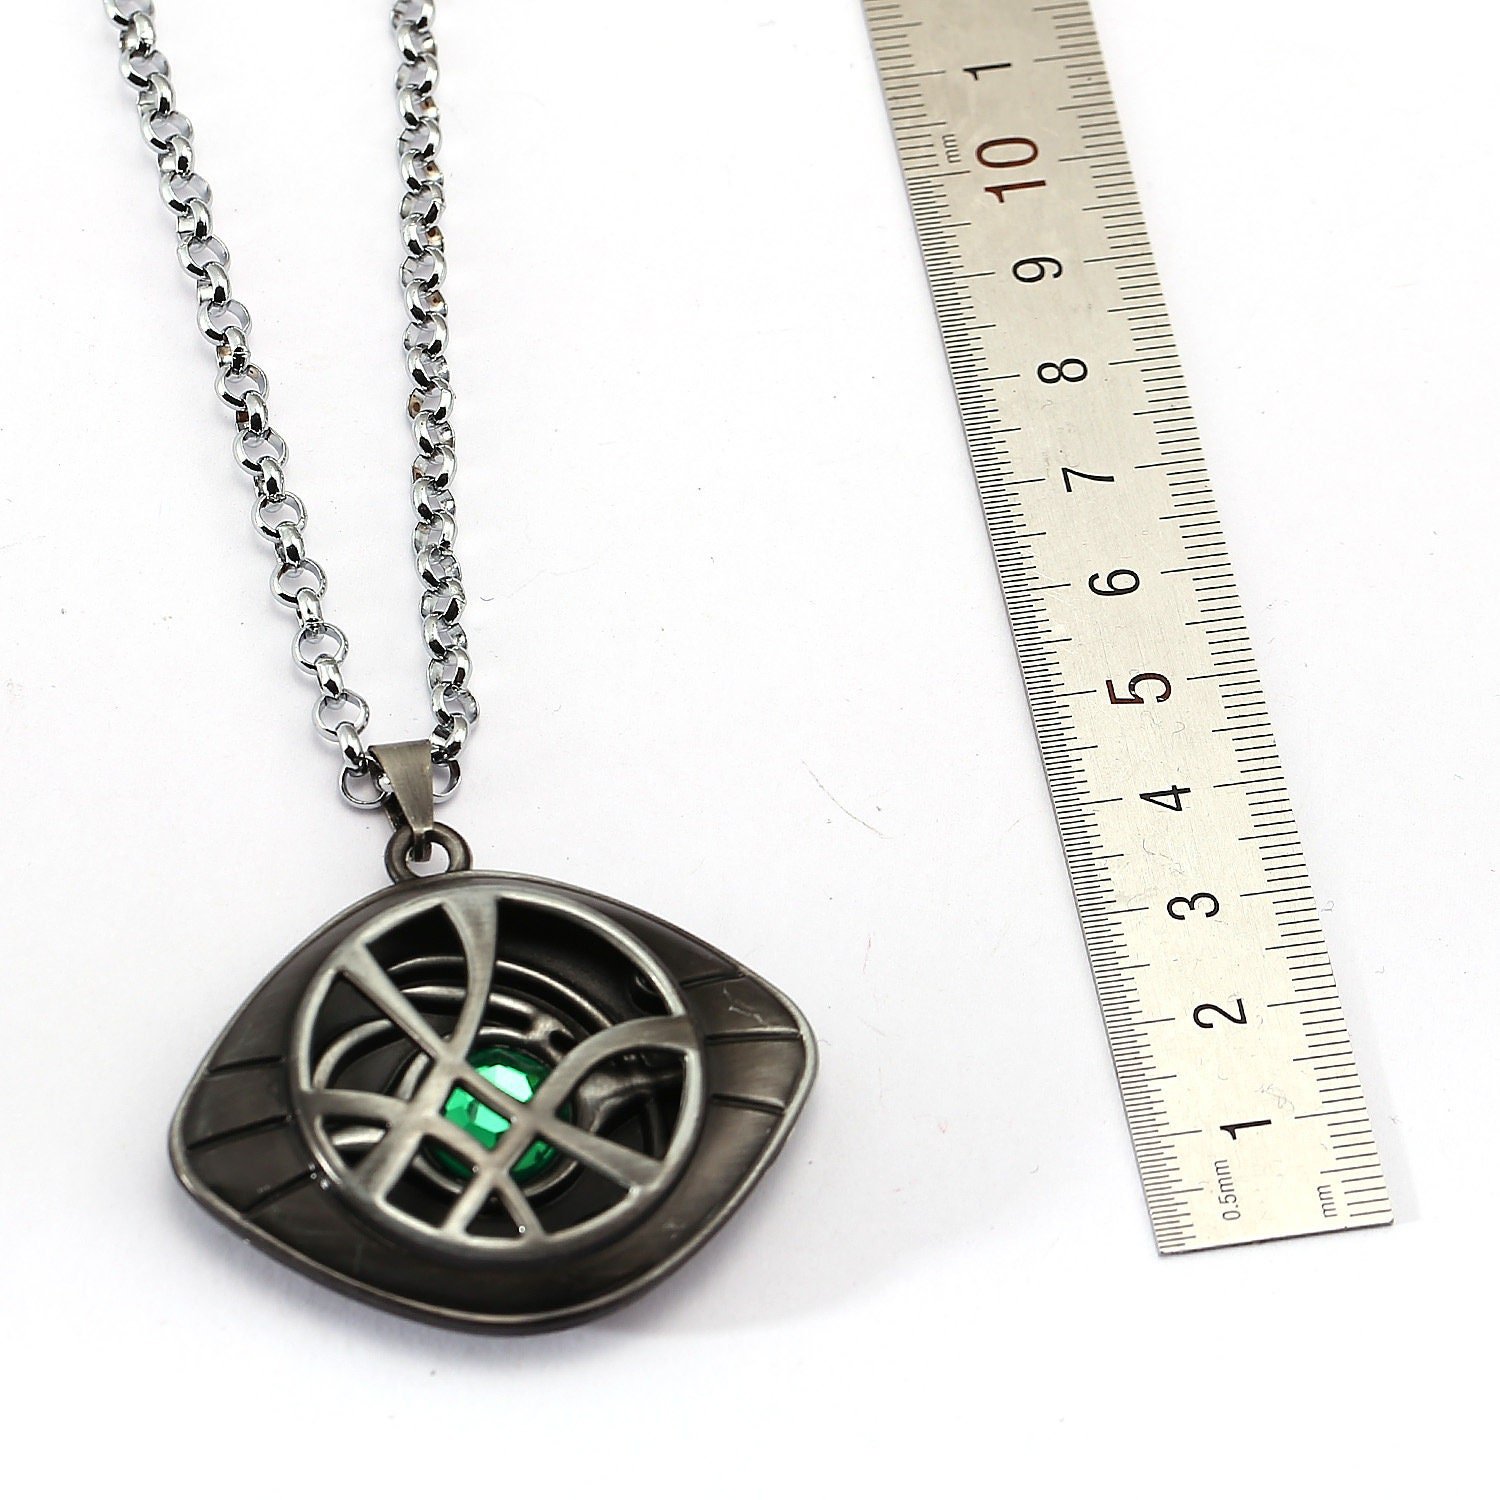 Dr.Strange”Eye of Agamoto” L.E.D green light necklace - general for sale -  by owner - craigslist